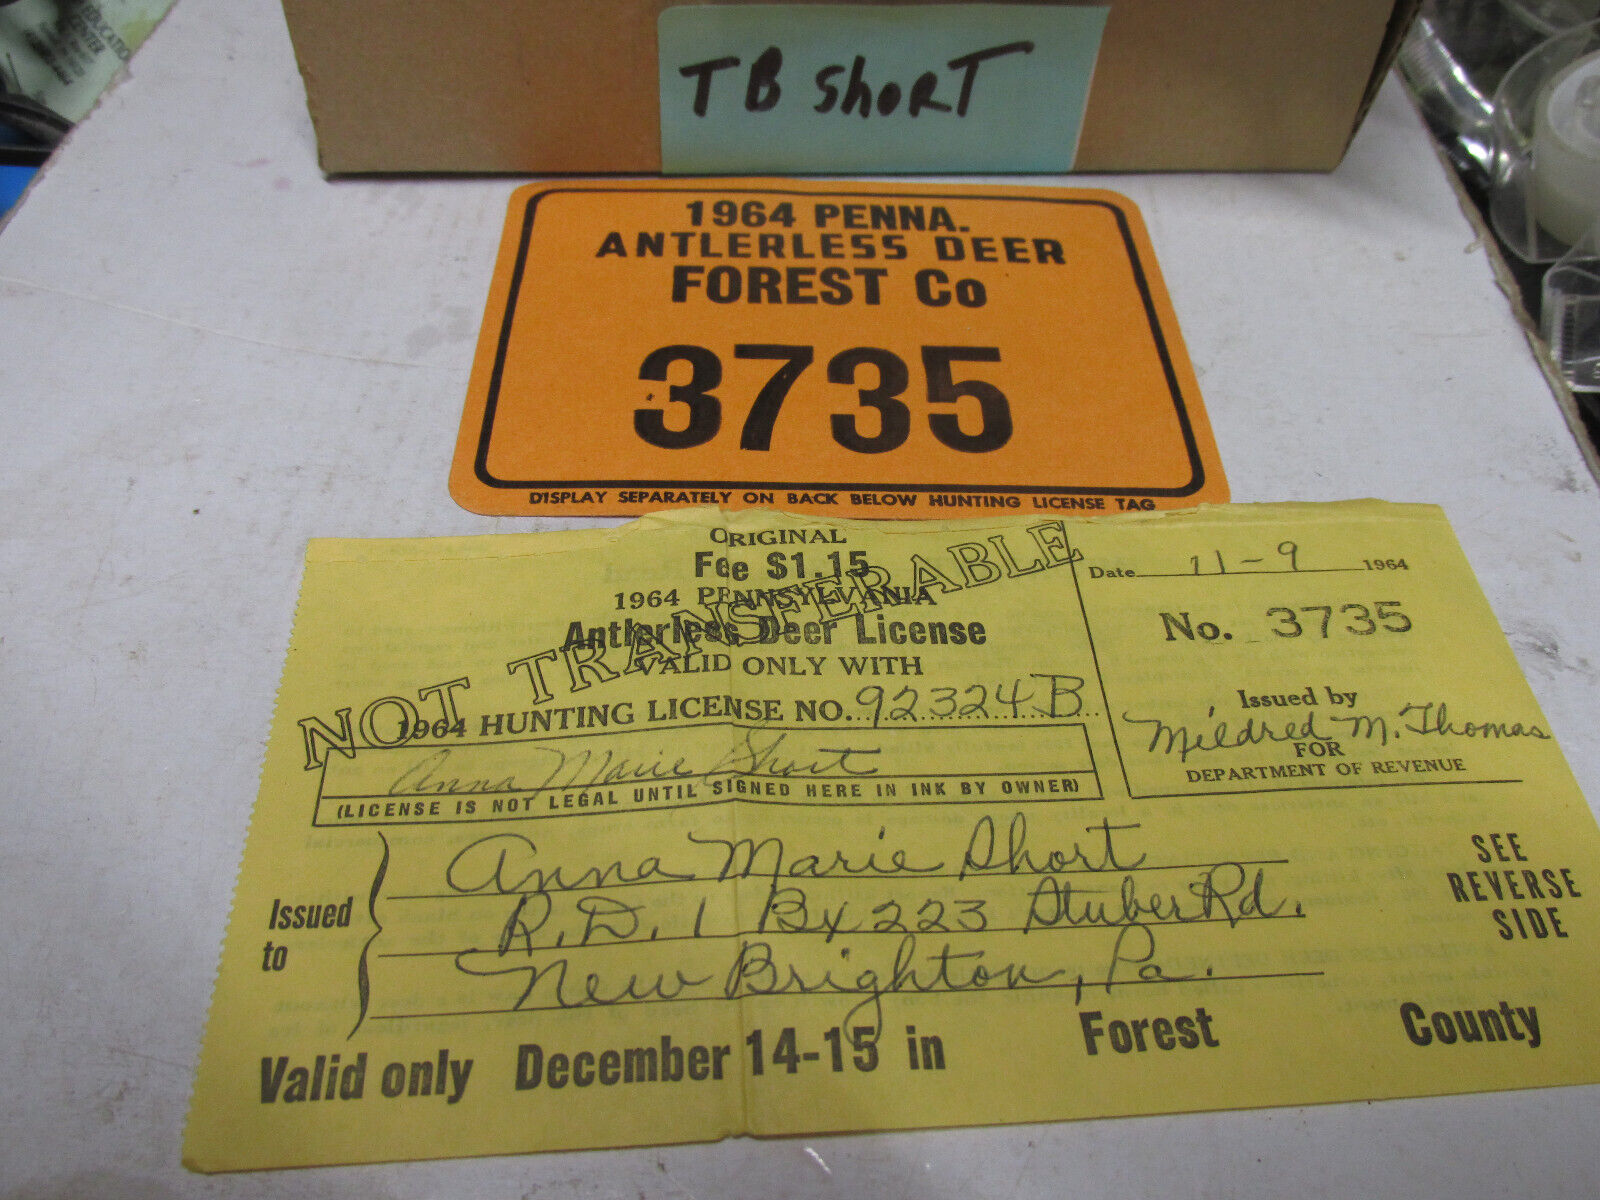 [TBshort] 1964 Pa resident Beaver county, antlerless hunting license,